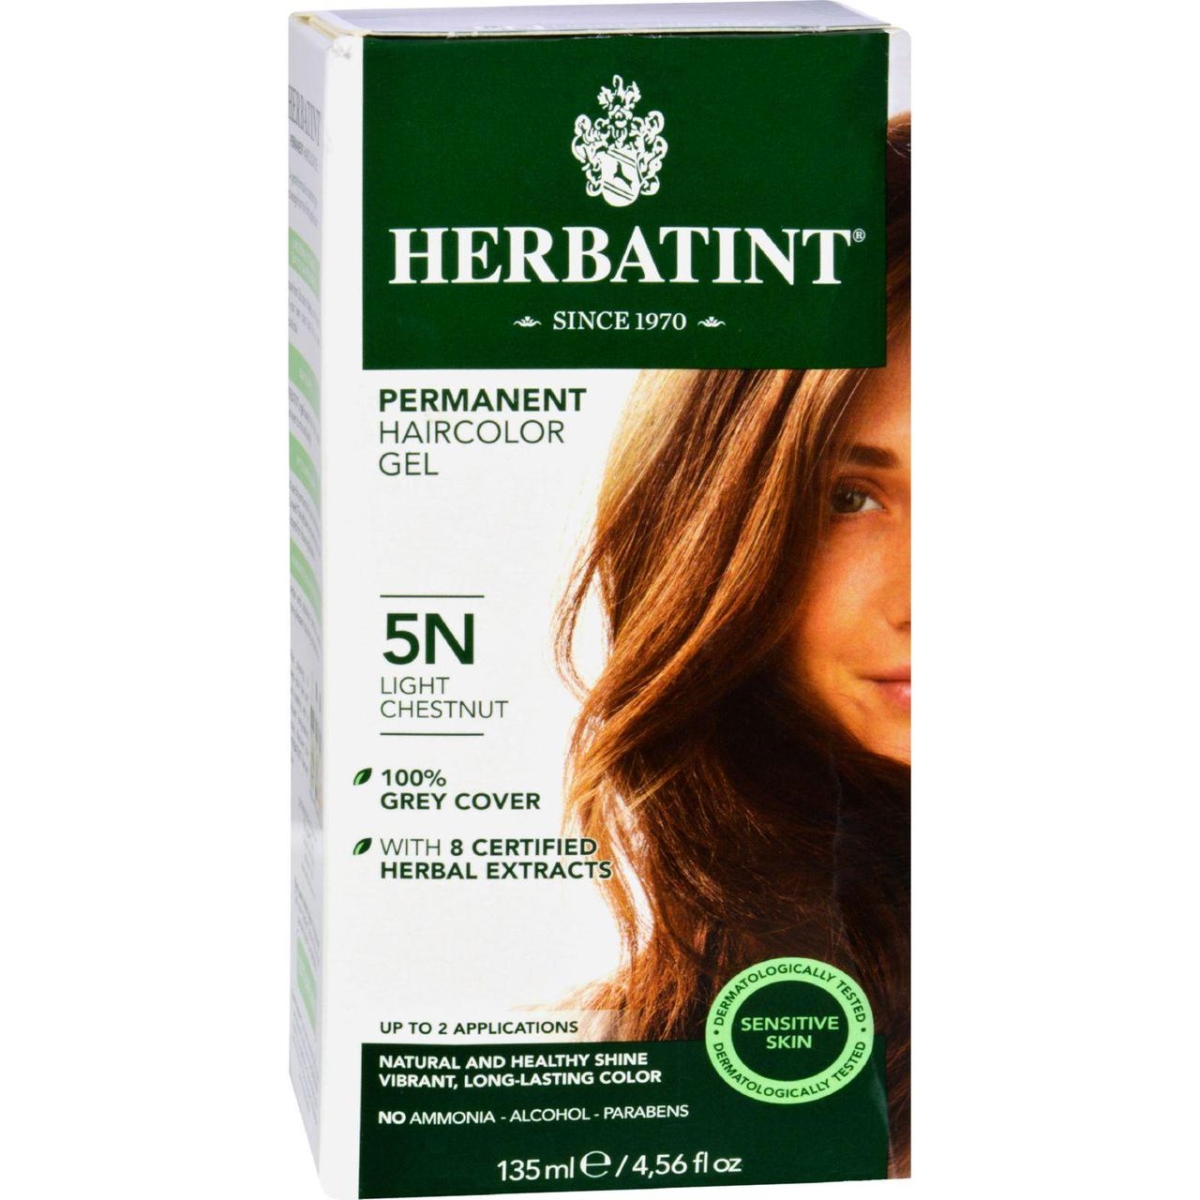 Hg0226662 135 Ml Permanent Herbal Haircolor Gel, 5n Light Chestnut